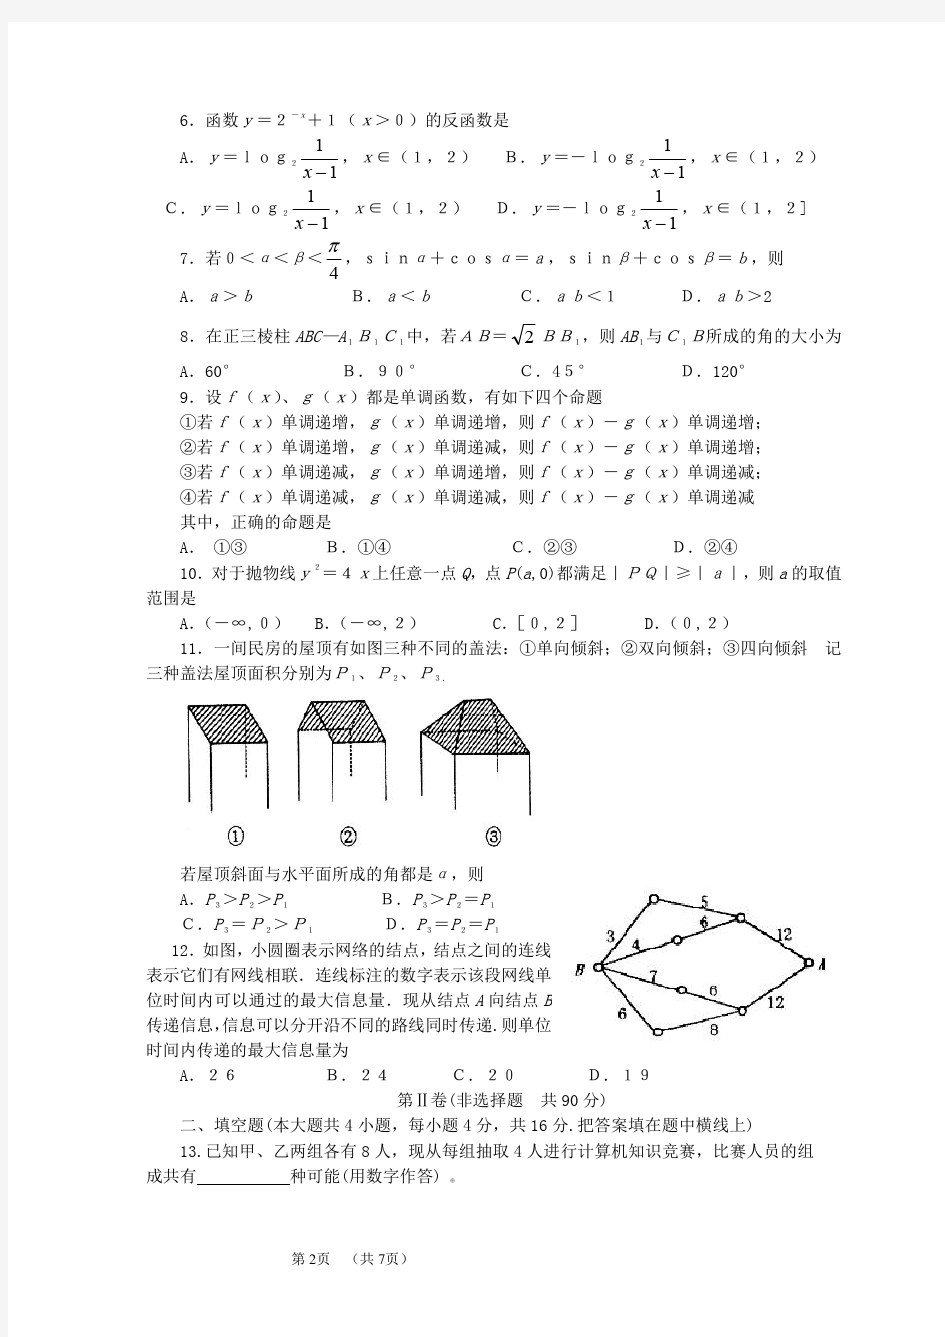 2001年高考.广东卷.数学试题及答案